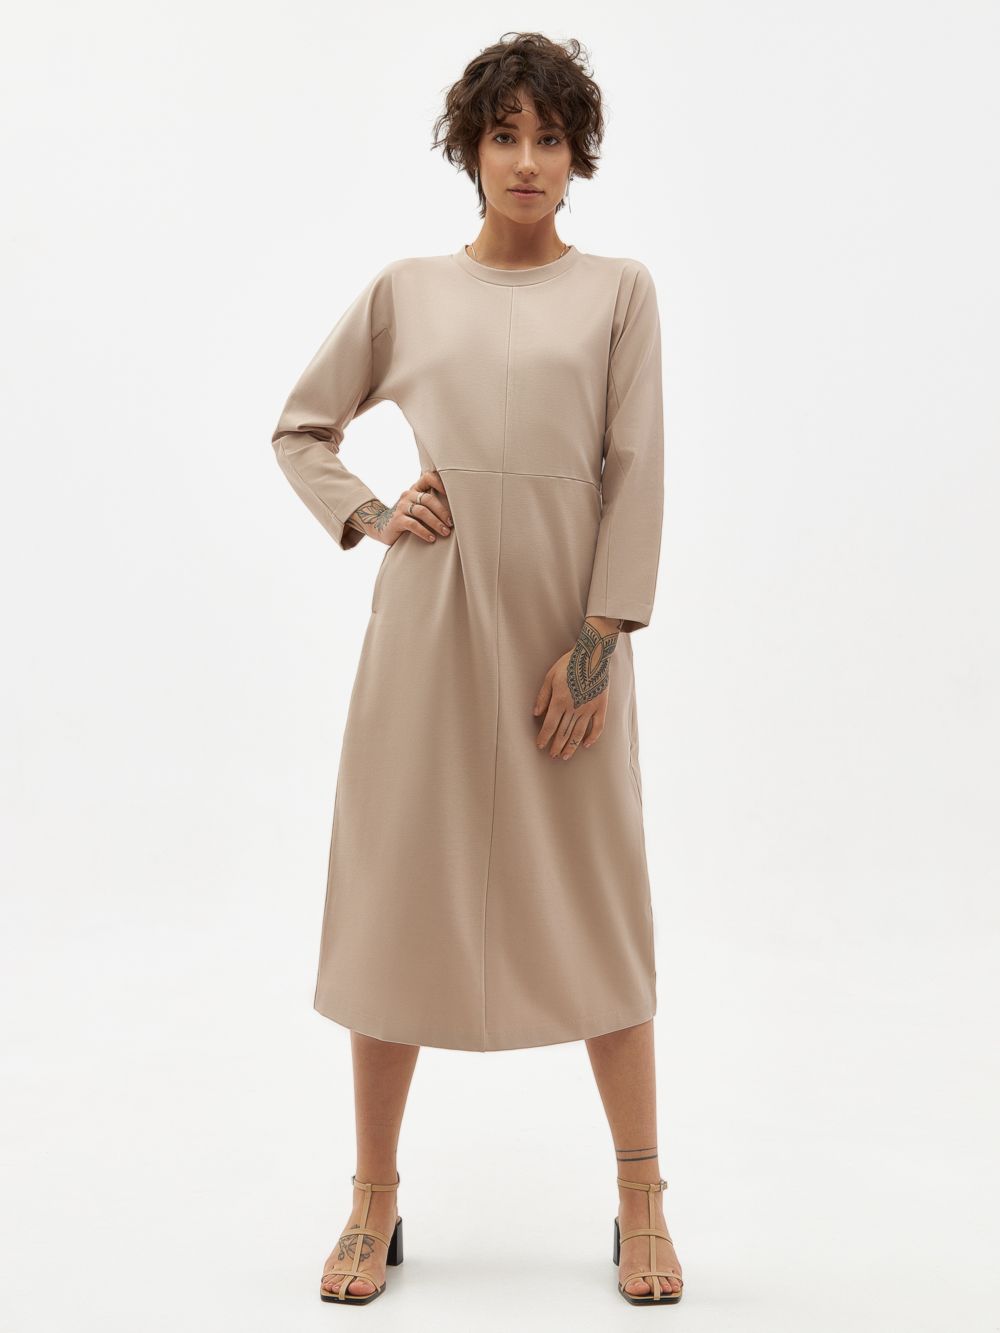 Трикотажное платье PAVO со светоотражающим брендингом. Изображение 7